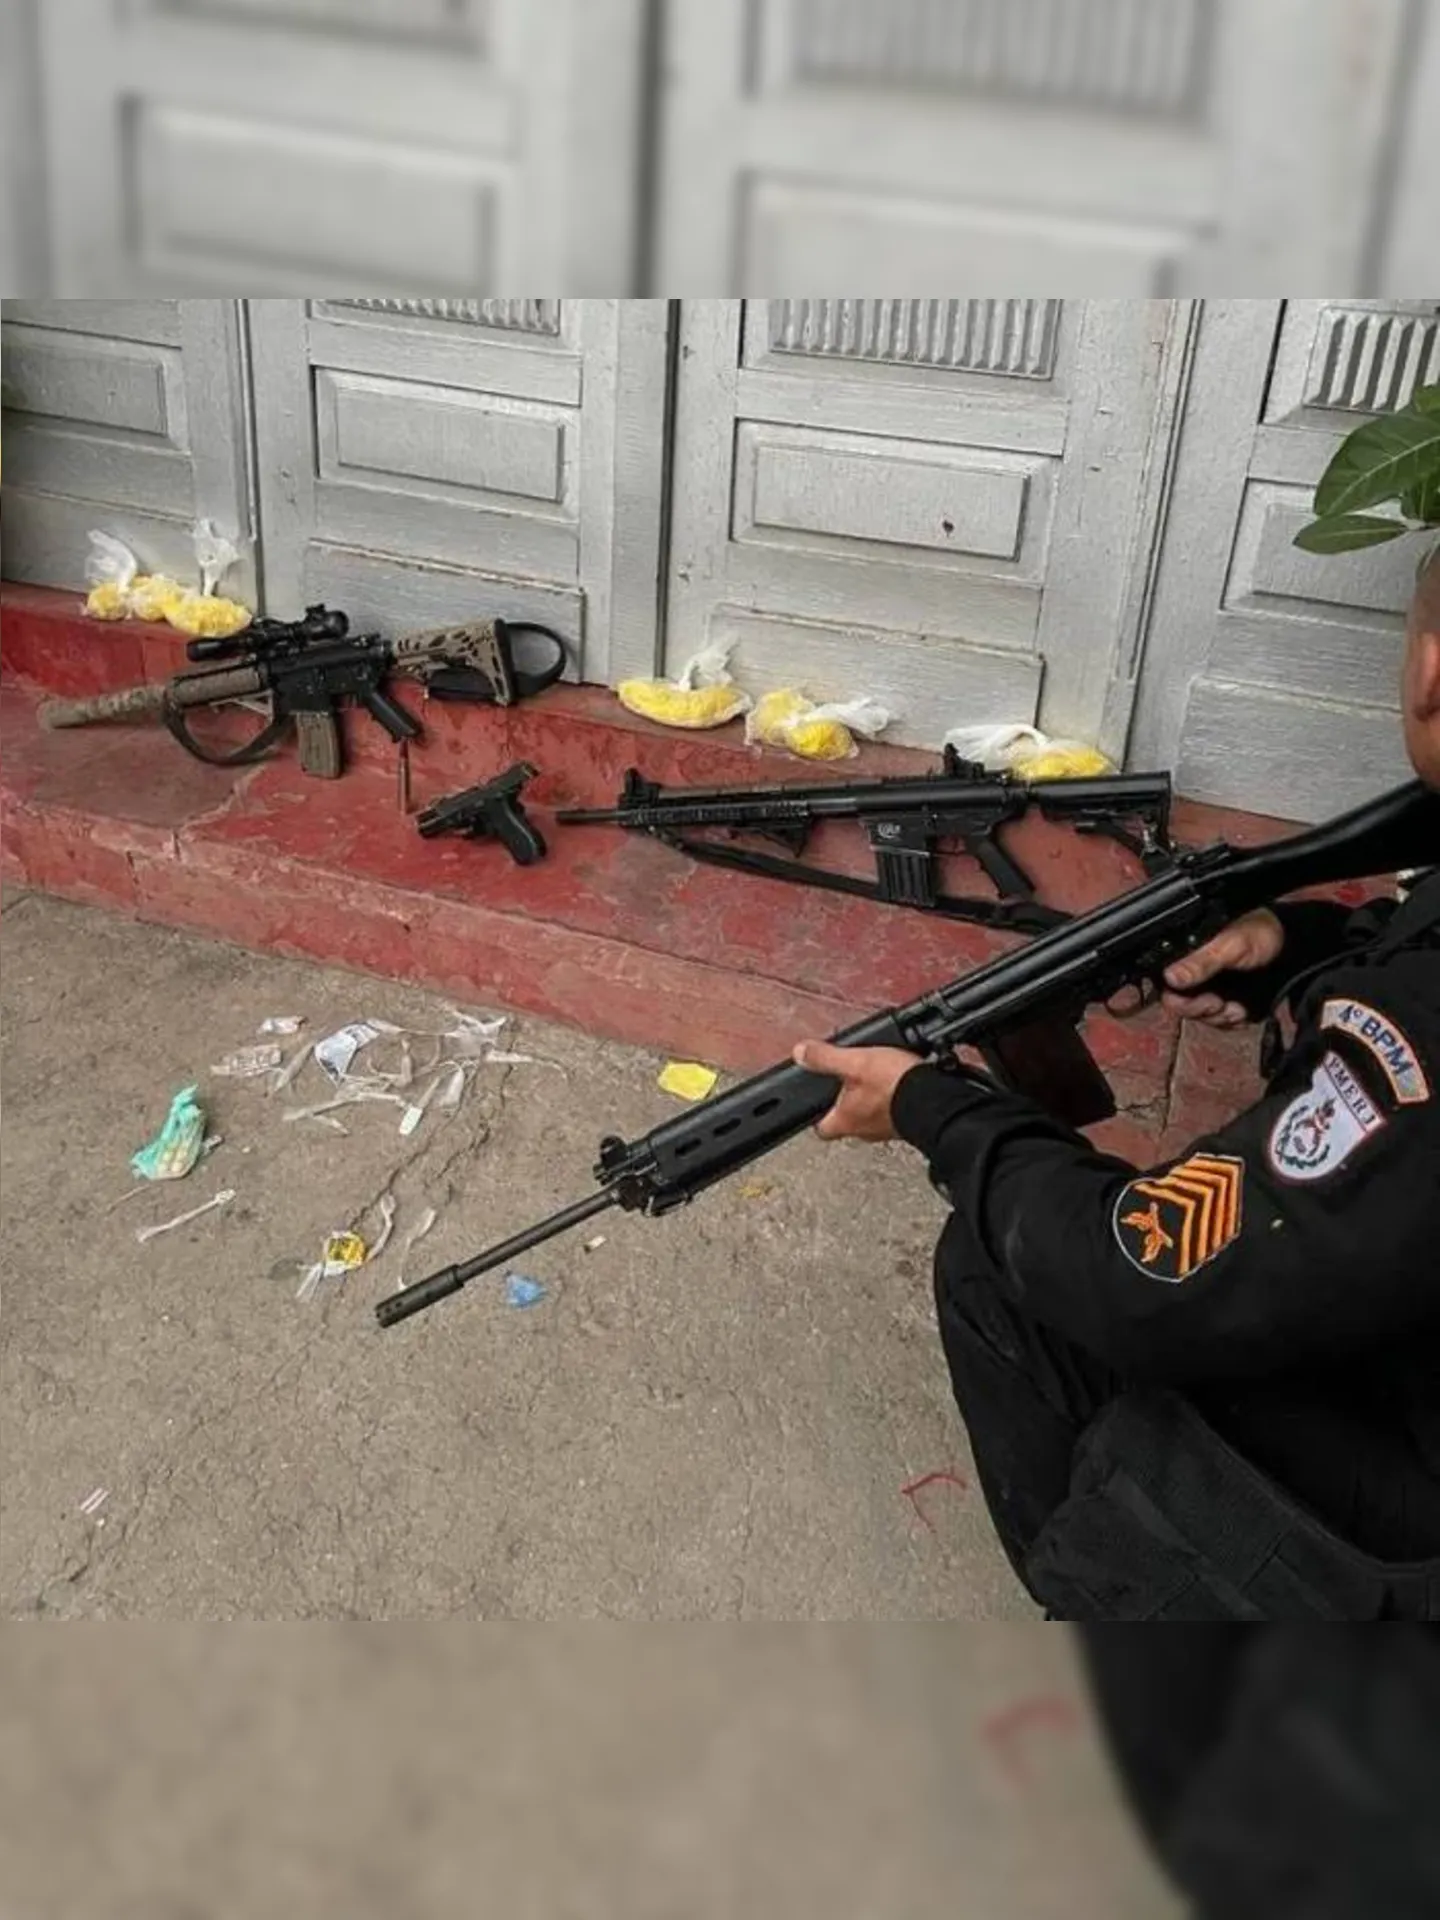 Equipes da Polícia Militar apreenderam dois fuzis no Caju